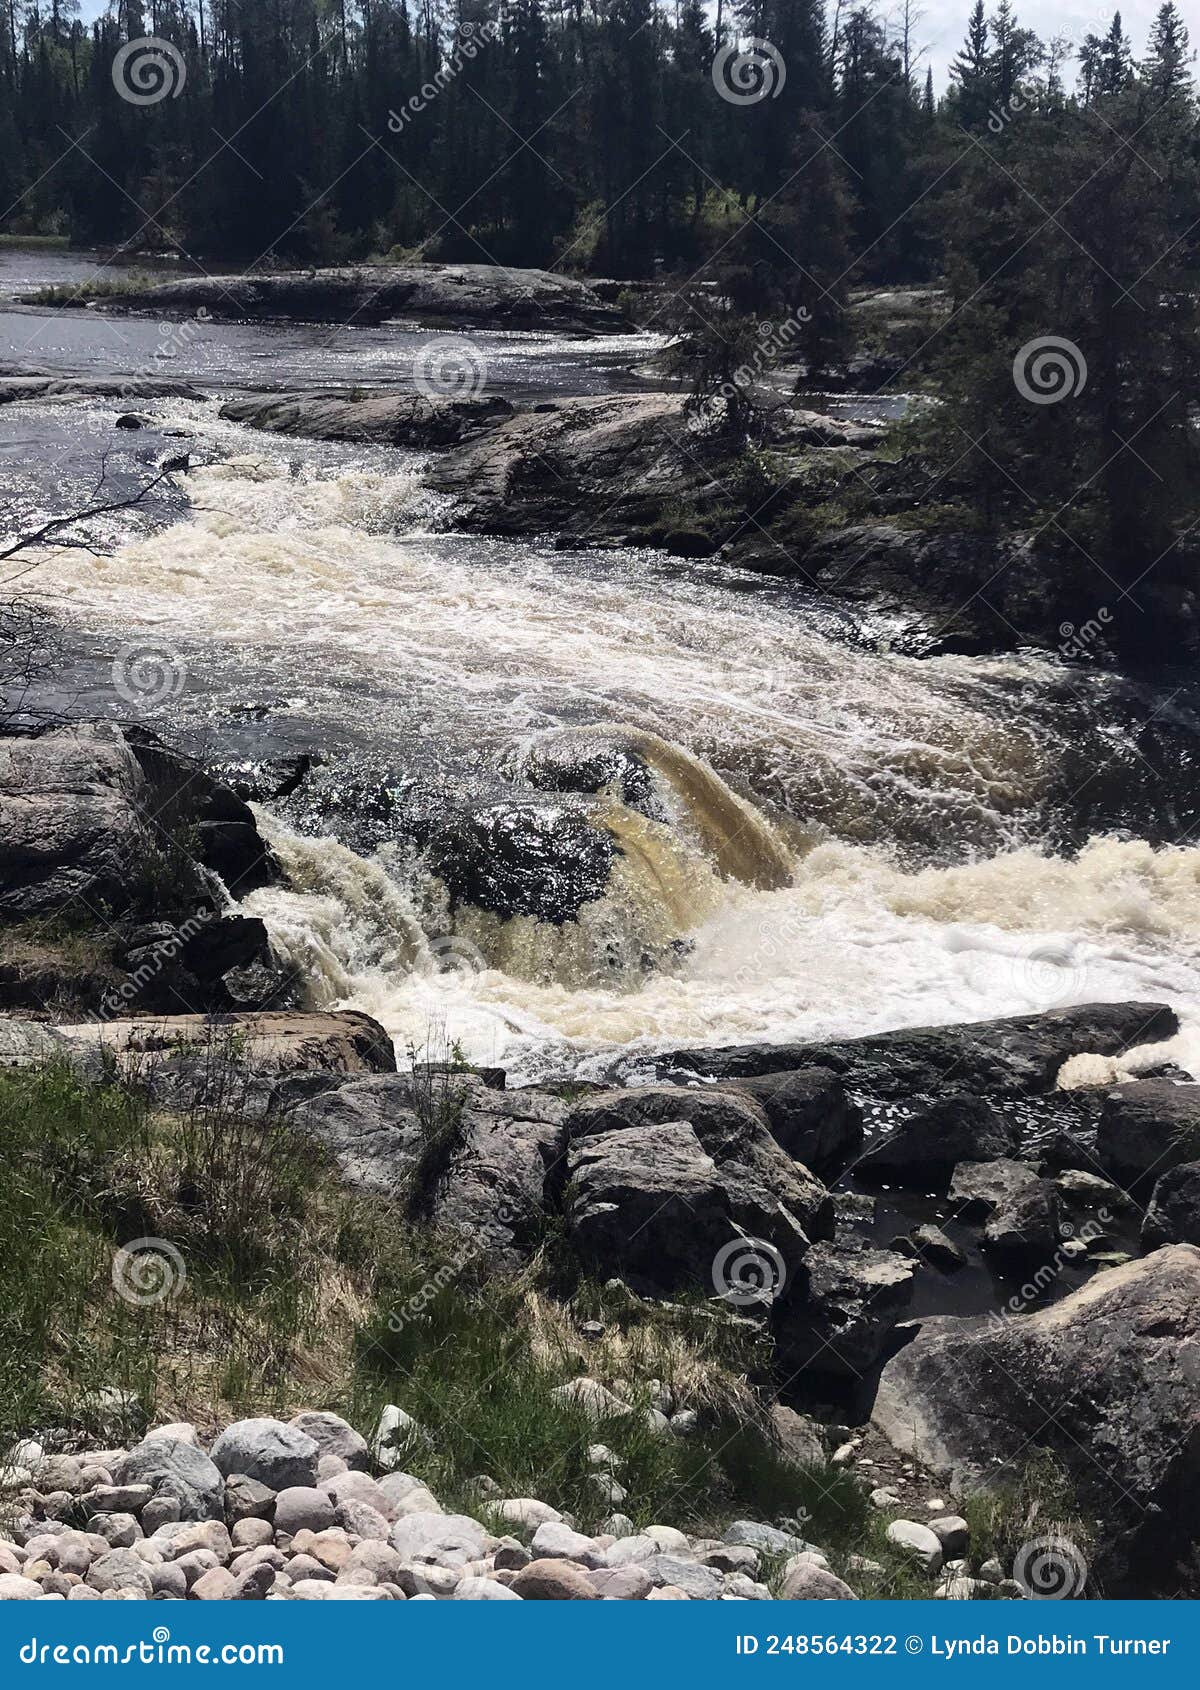 falls along wabigoon river, ontario, canada